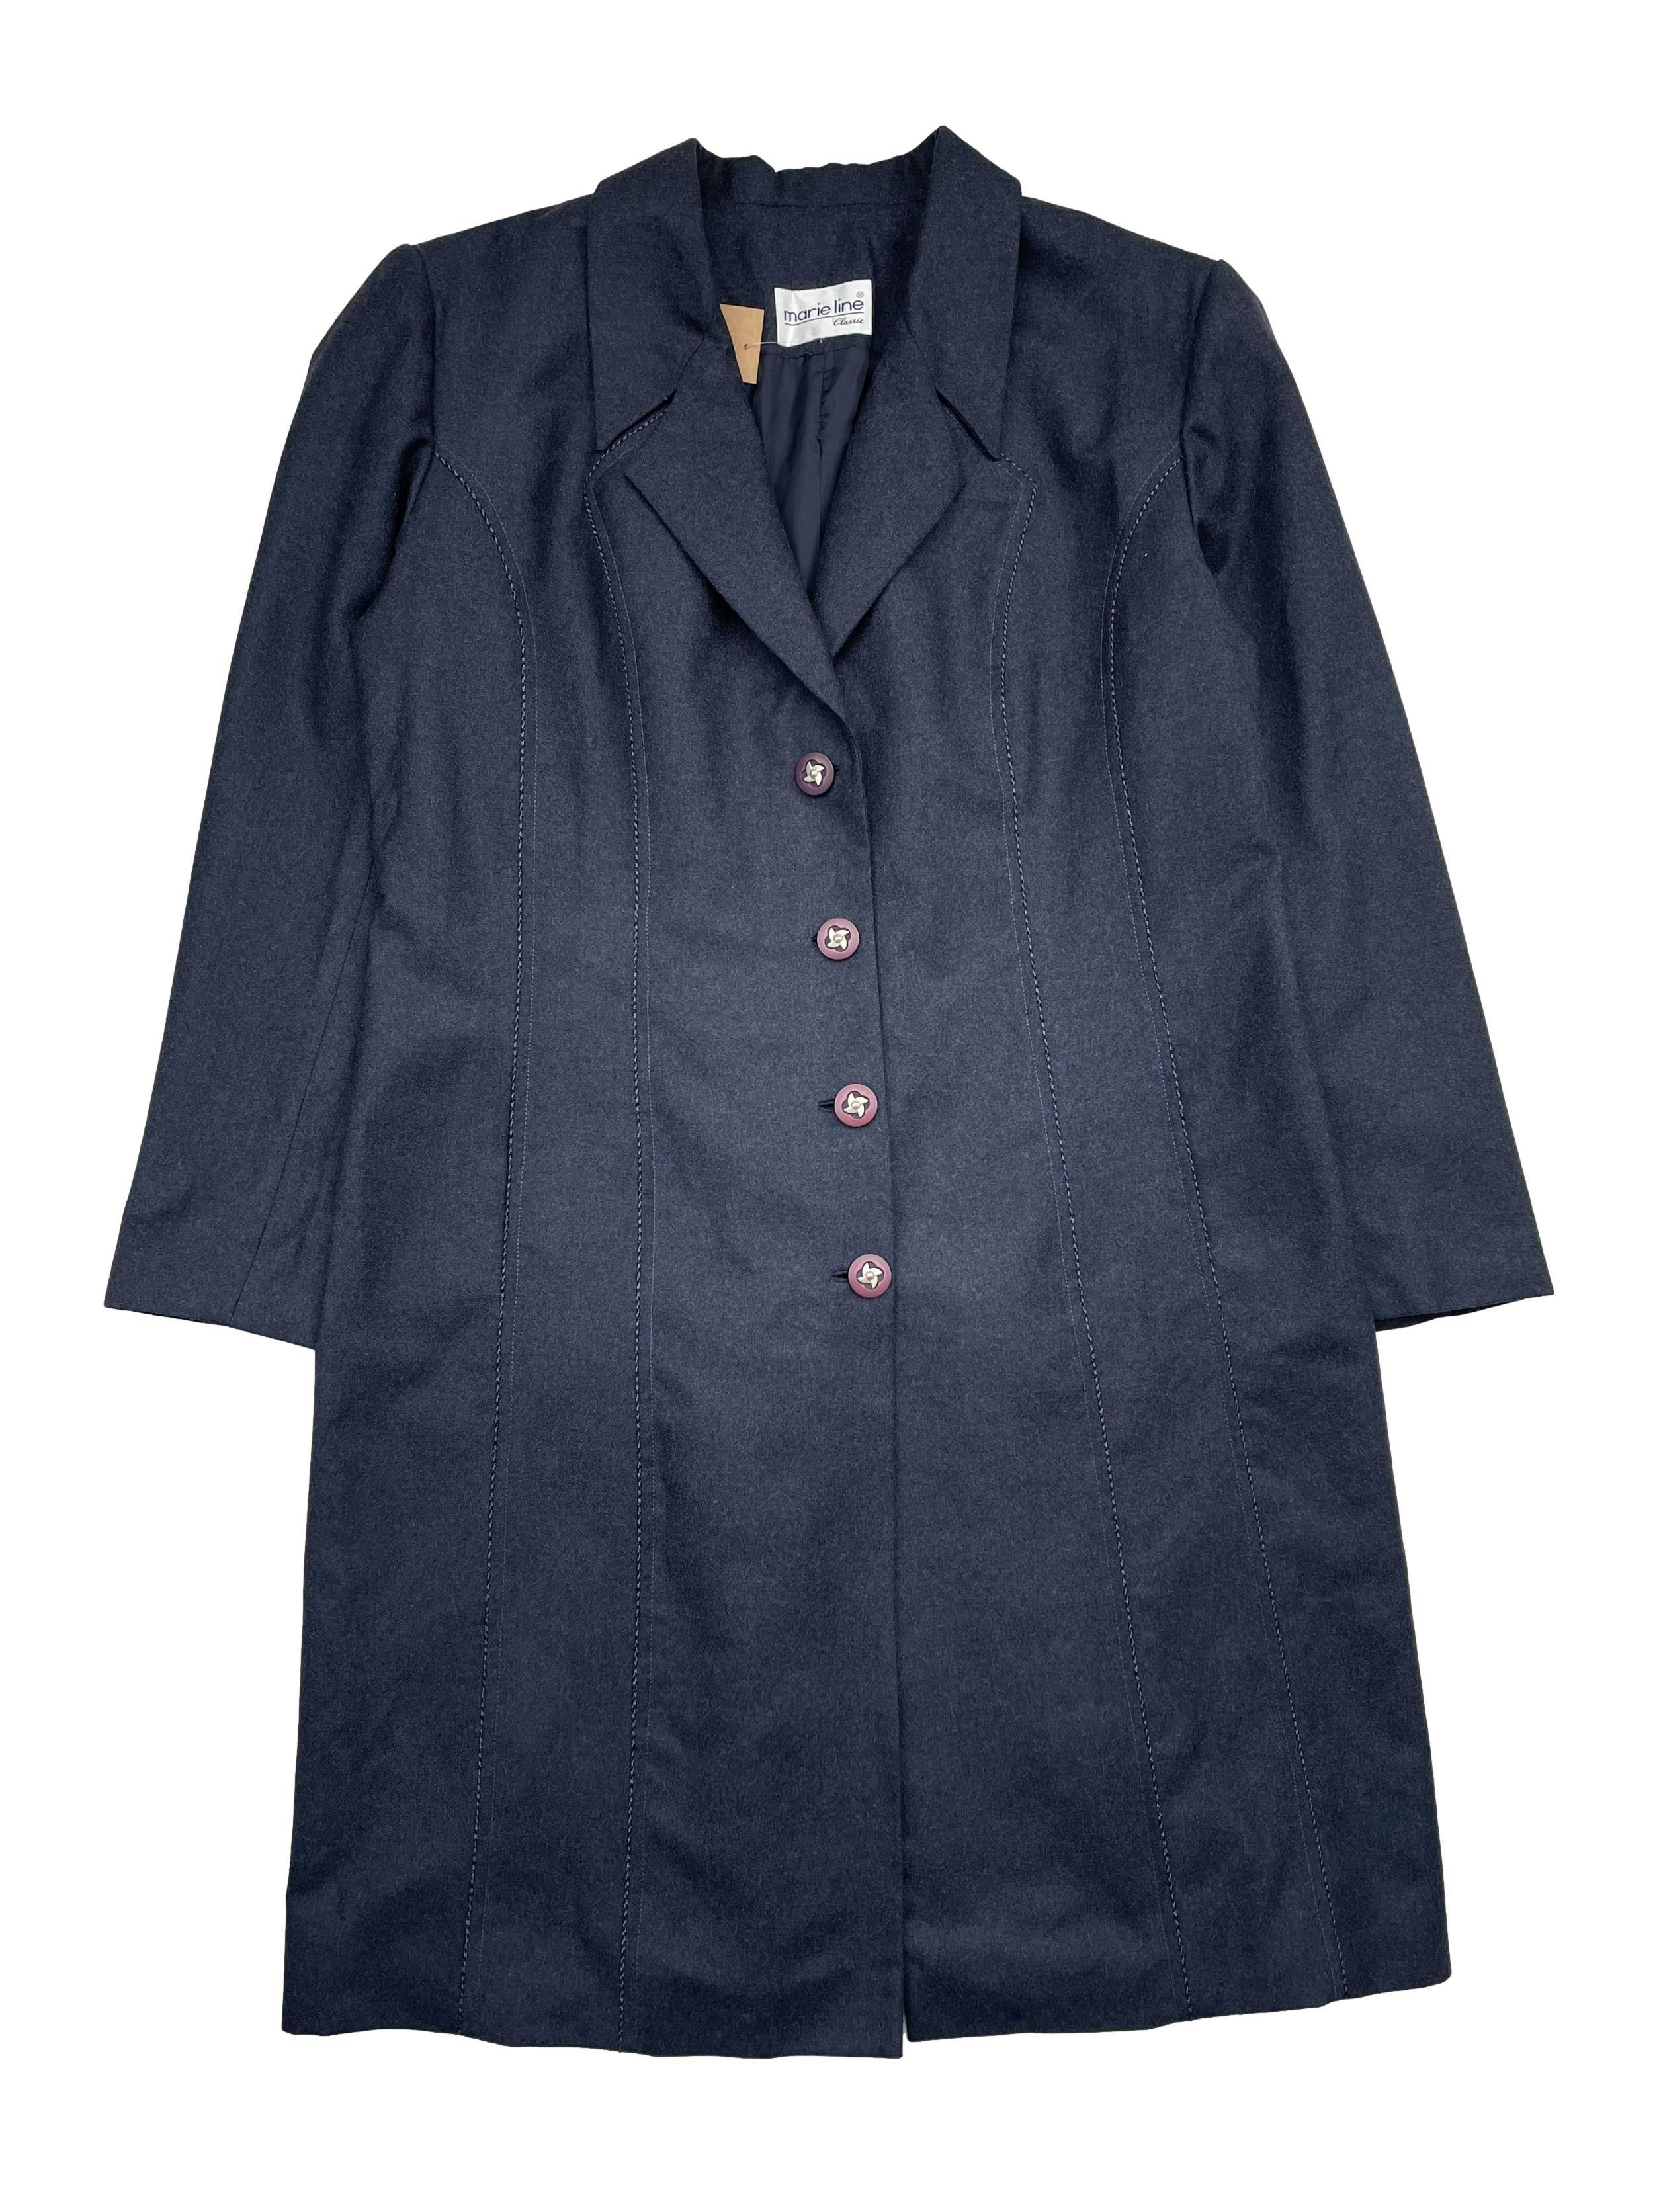 Abrigo largo de lanilla azul, forrado con bolsillos laterales invisibles. Busto: 122cm, Largo: 102cm.